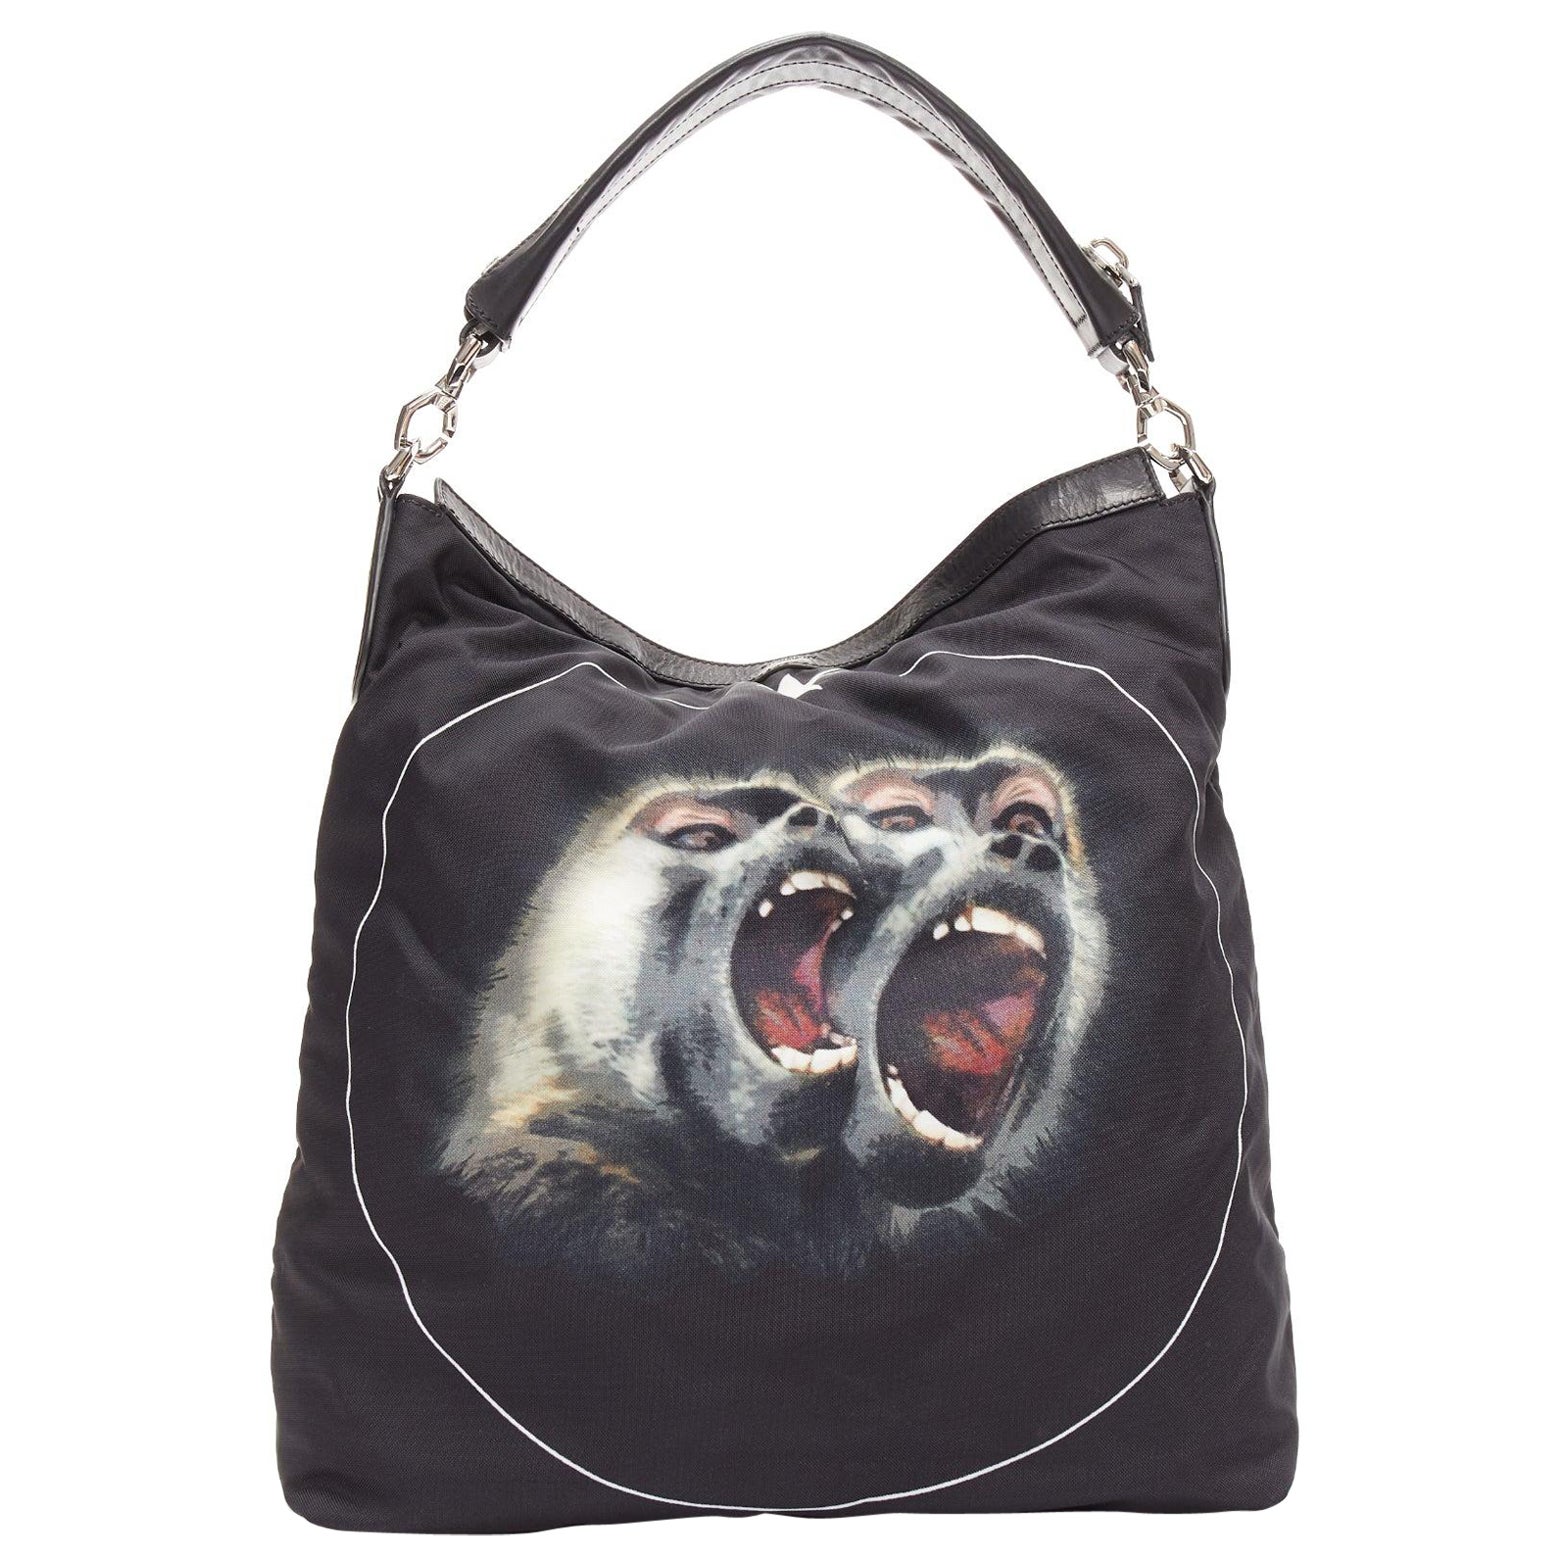 GIVENCHY Riccardo Tisci Monkey Brothers Nightingale nylon leather shoulder bag For Sale